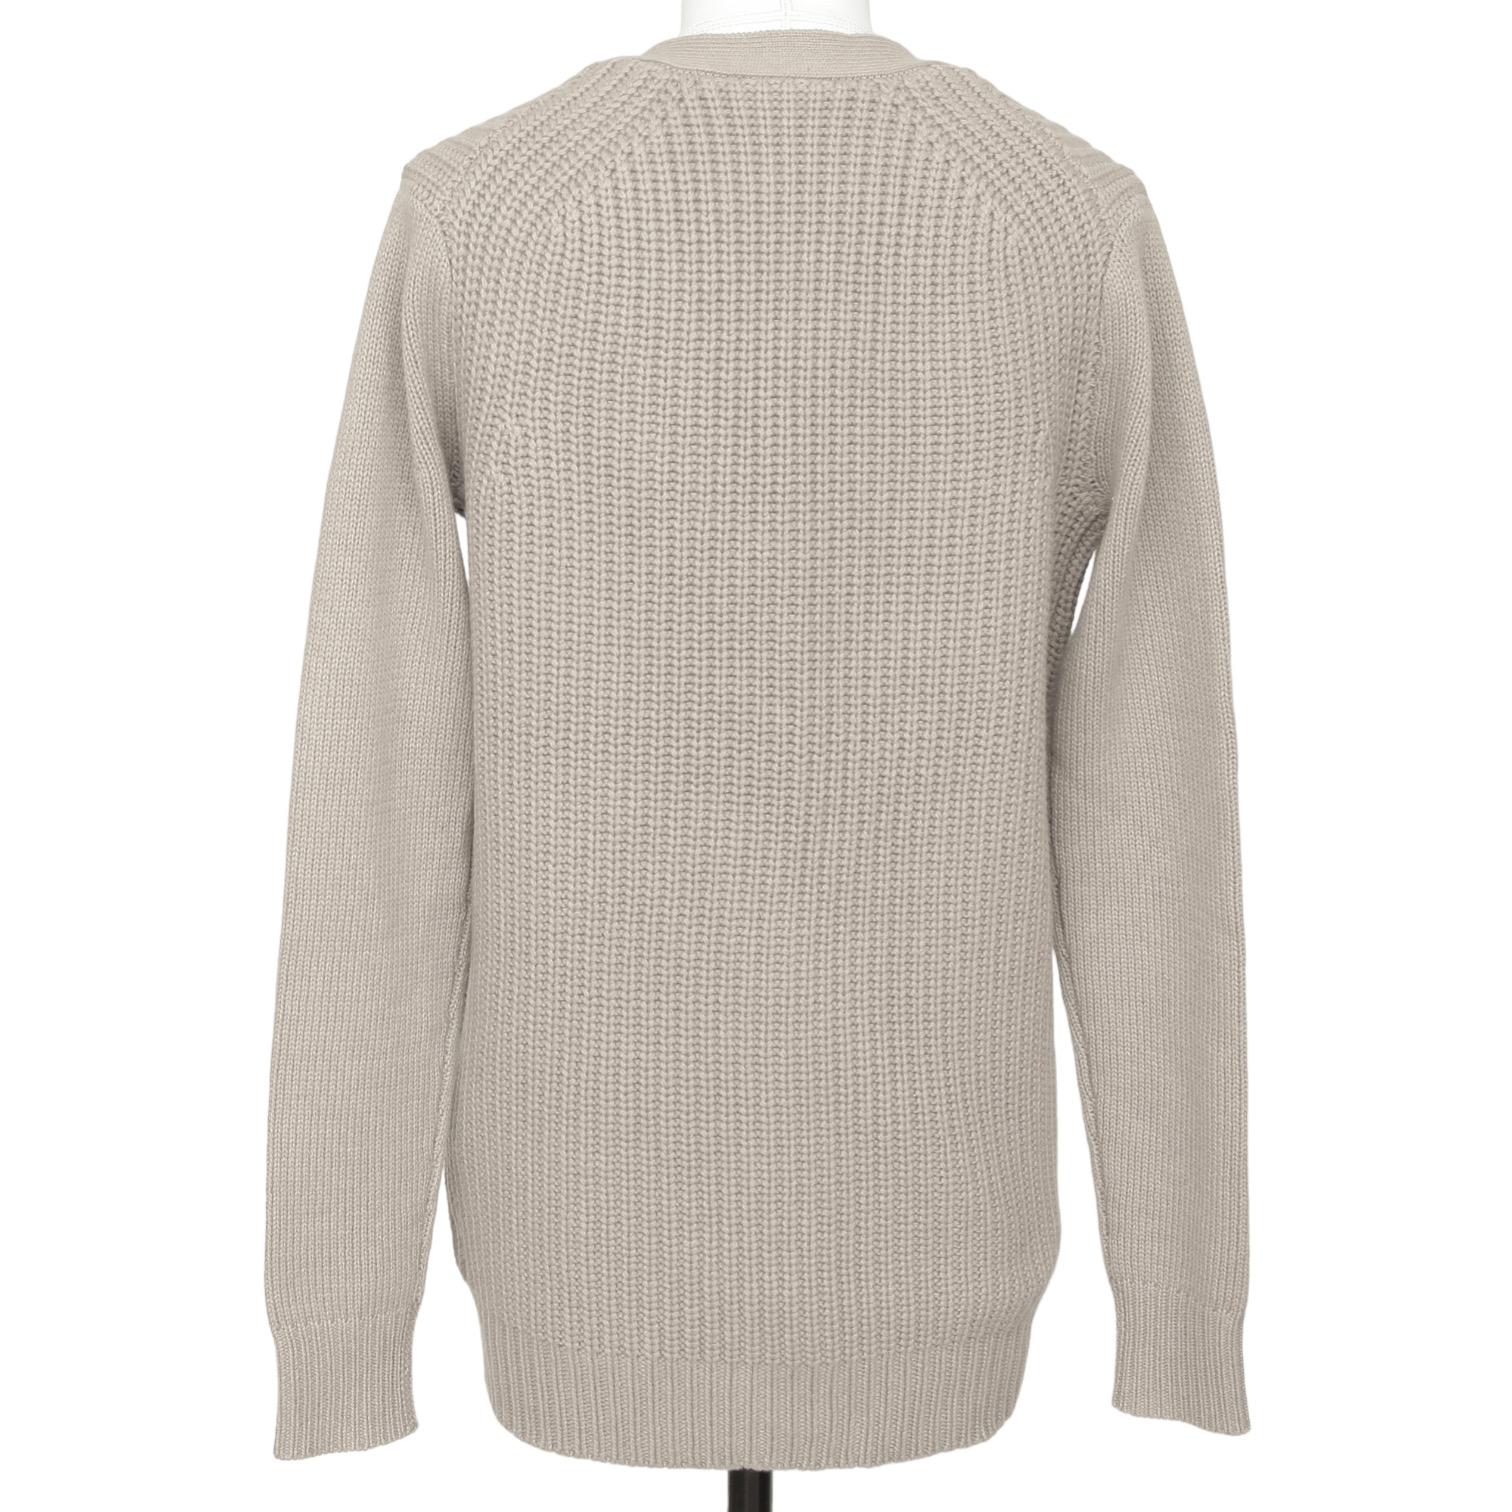 Women's CHLOE Cardigan Sweater Long Sleeve Beige Knit Buttons Pockets Sz XS 2011 $895 For Sale